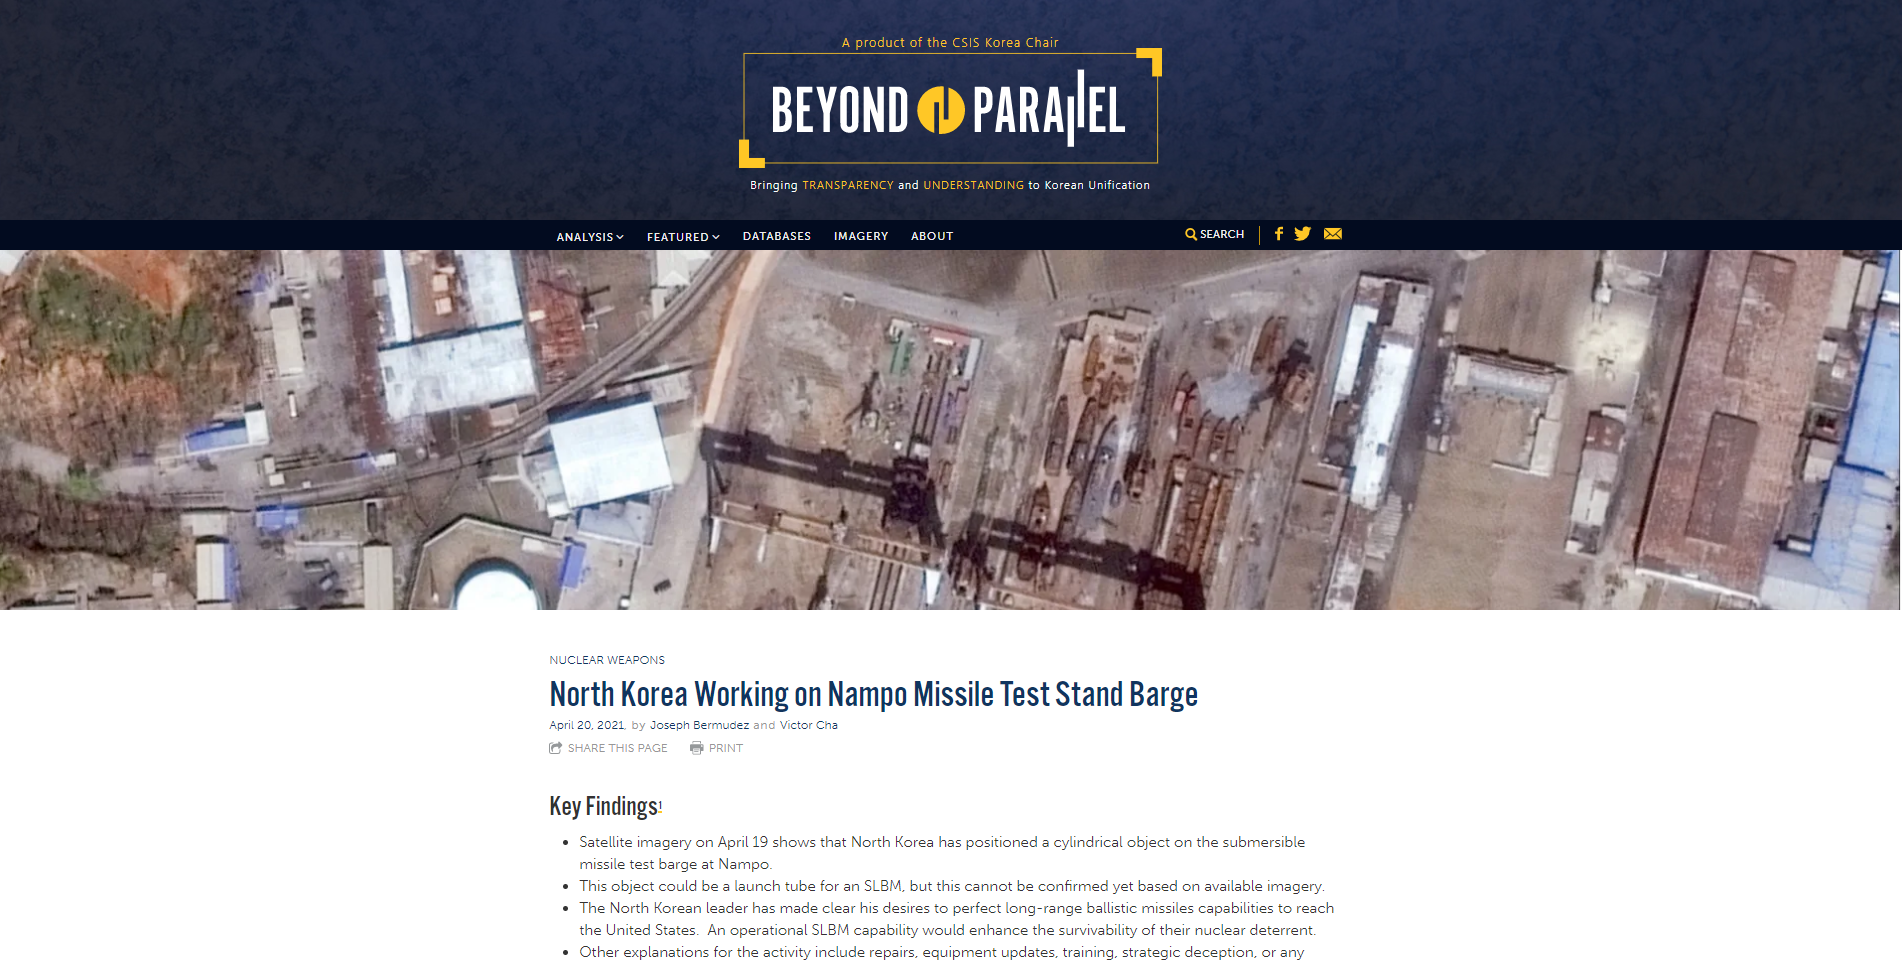 남포 해군조선소의 최근 움직임을 설명하고 있는 미국 CSIS의 북한전문사이트 ‘분단을 넘어’의 보고서. [사진 출처 : ‘분단을 넘어(Beyond Parallel)’ 홈페이지 https://beyondparallel.csis.org]